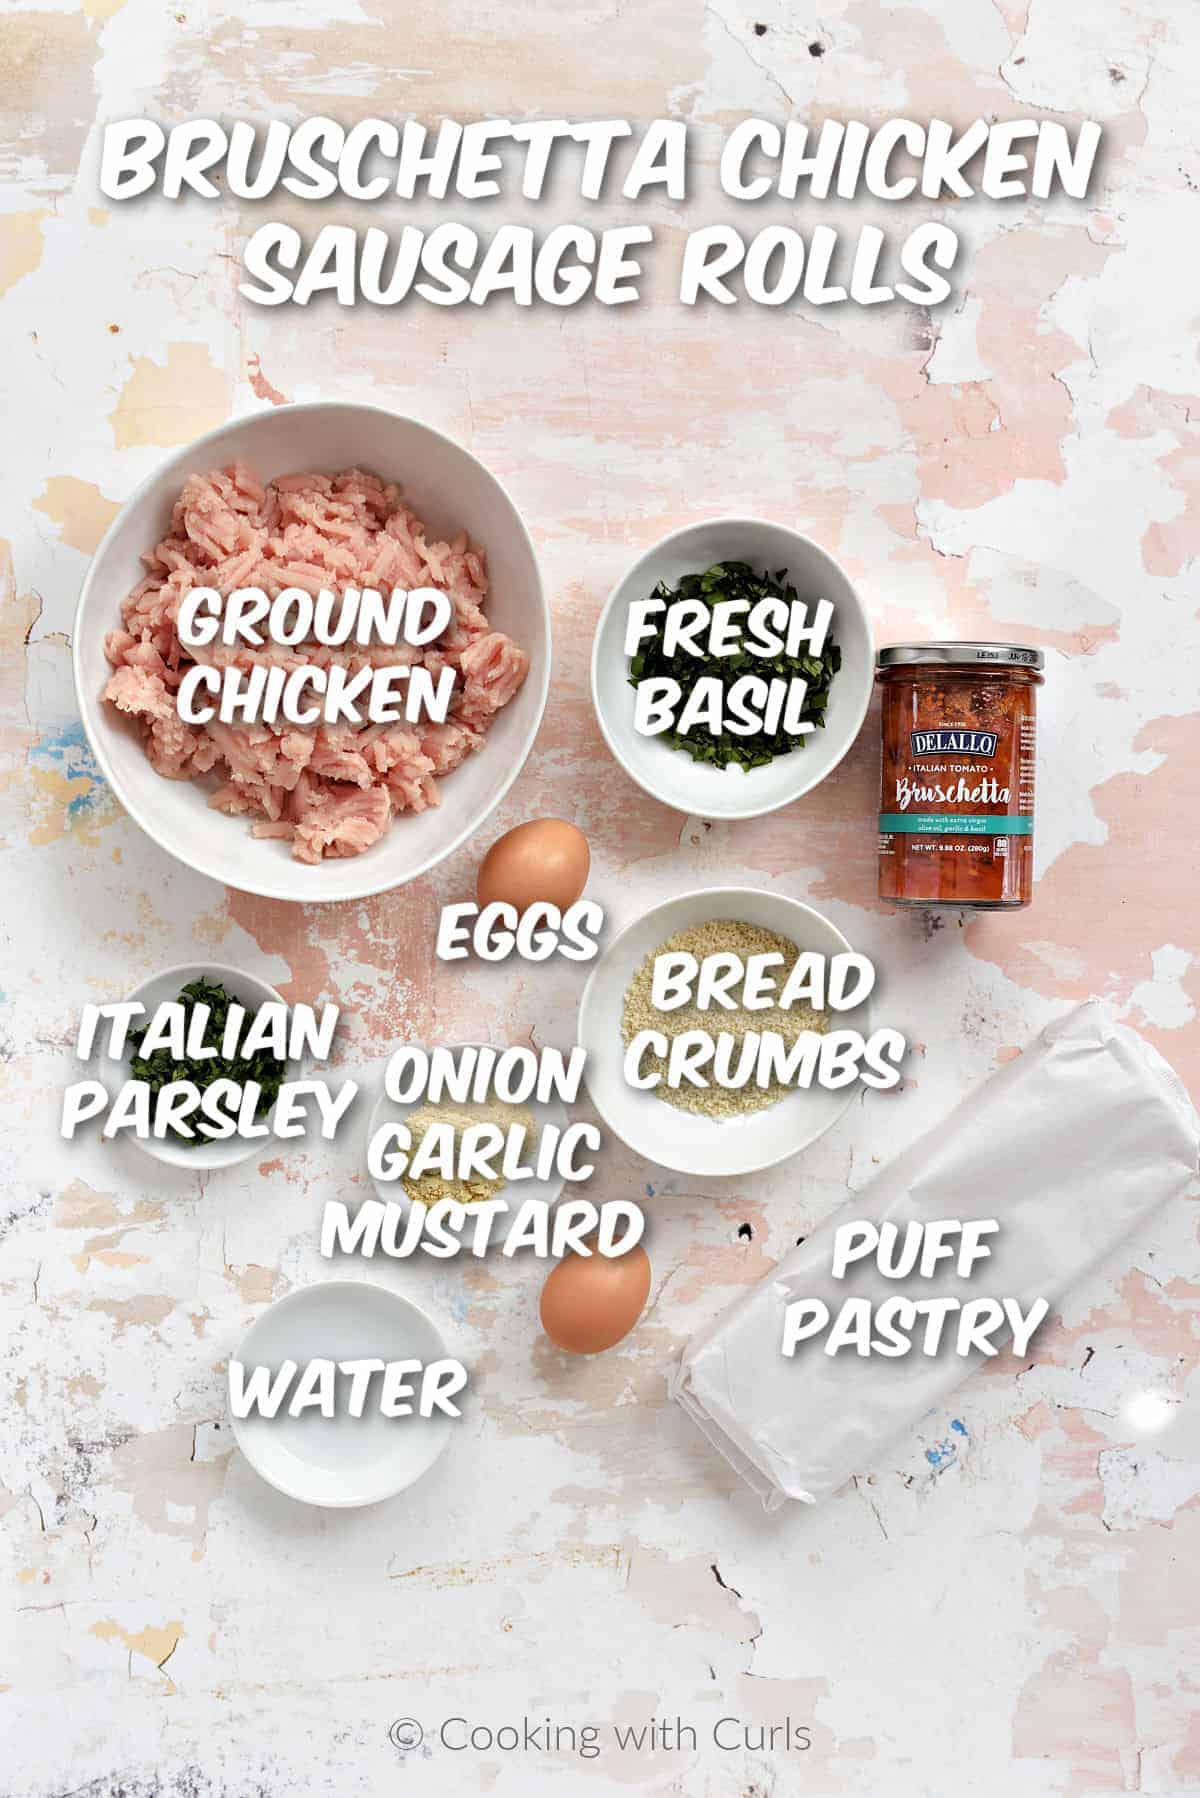 Ingredients to make bruschetta chicken sausage rolls.